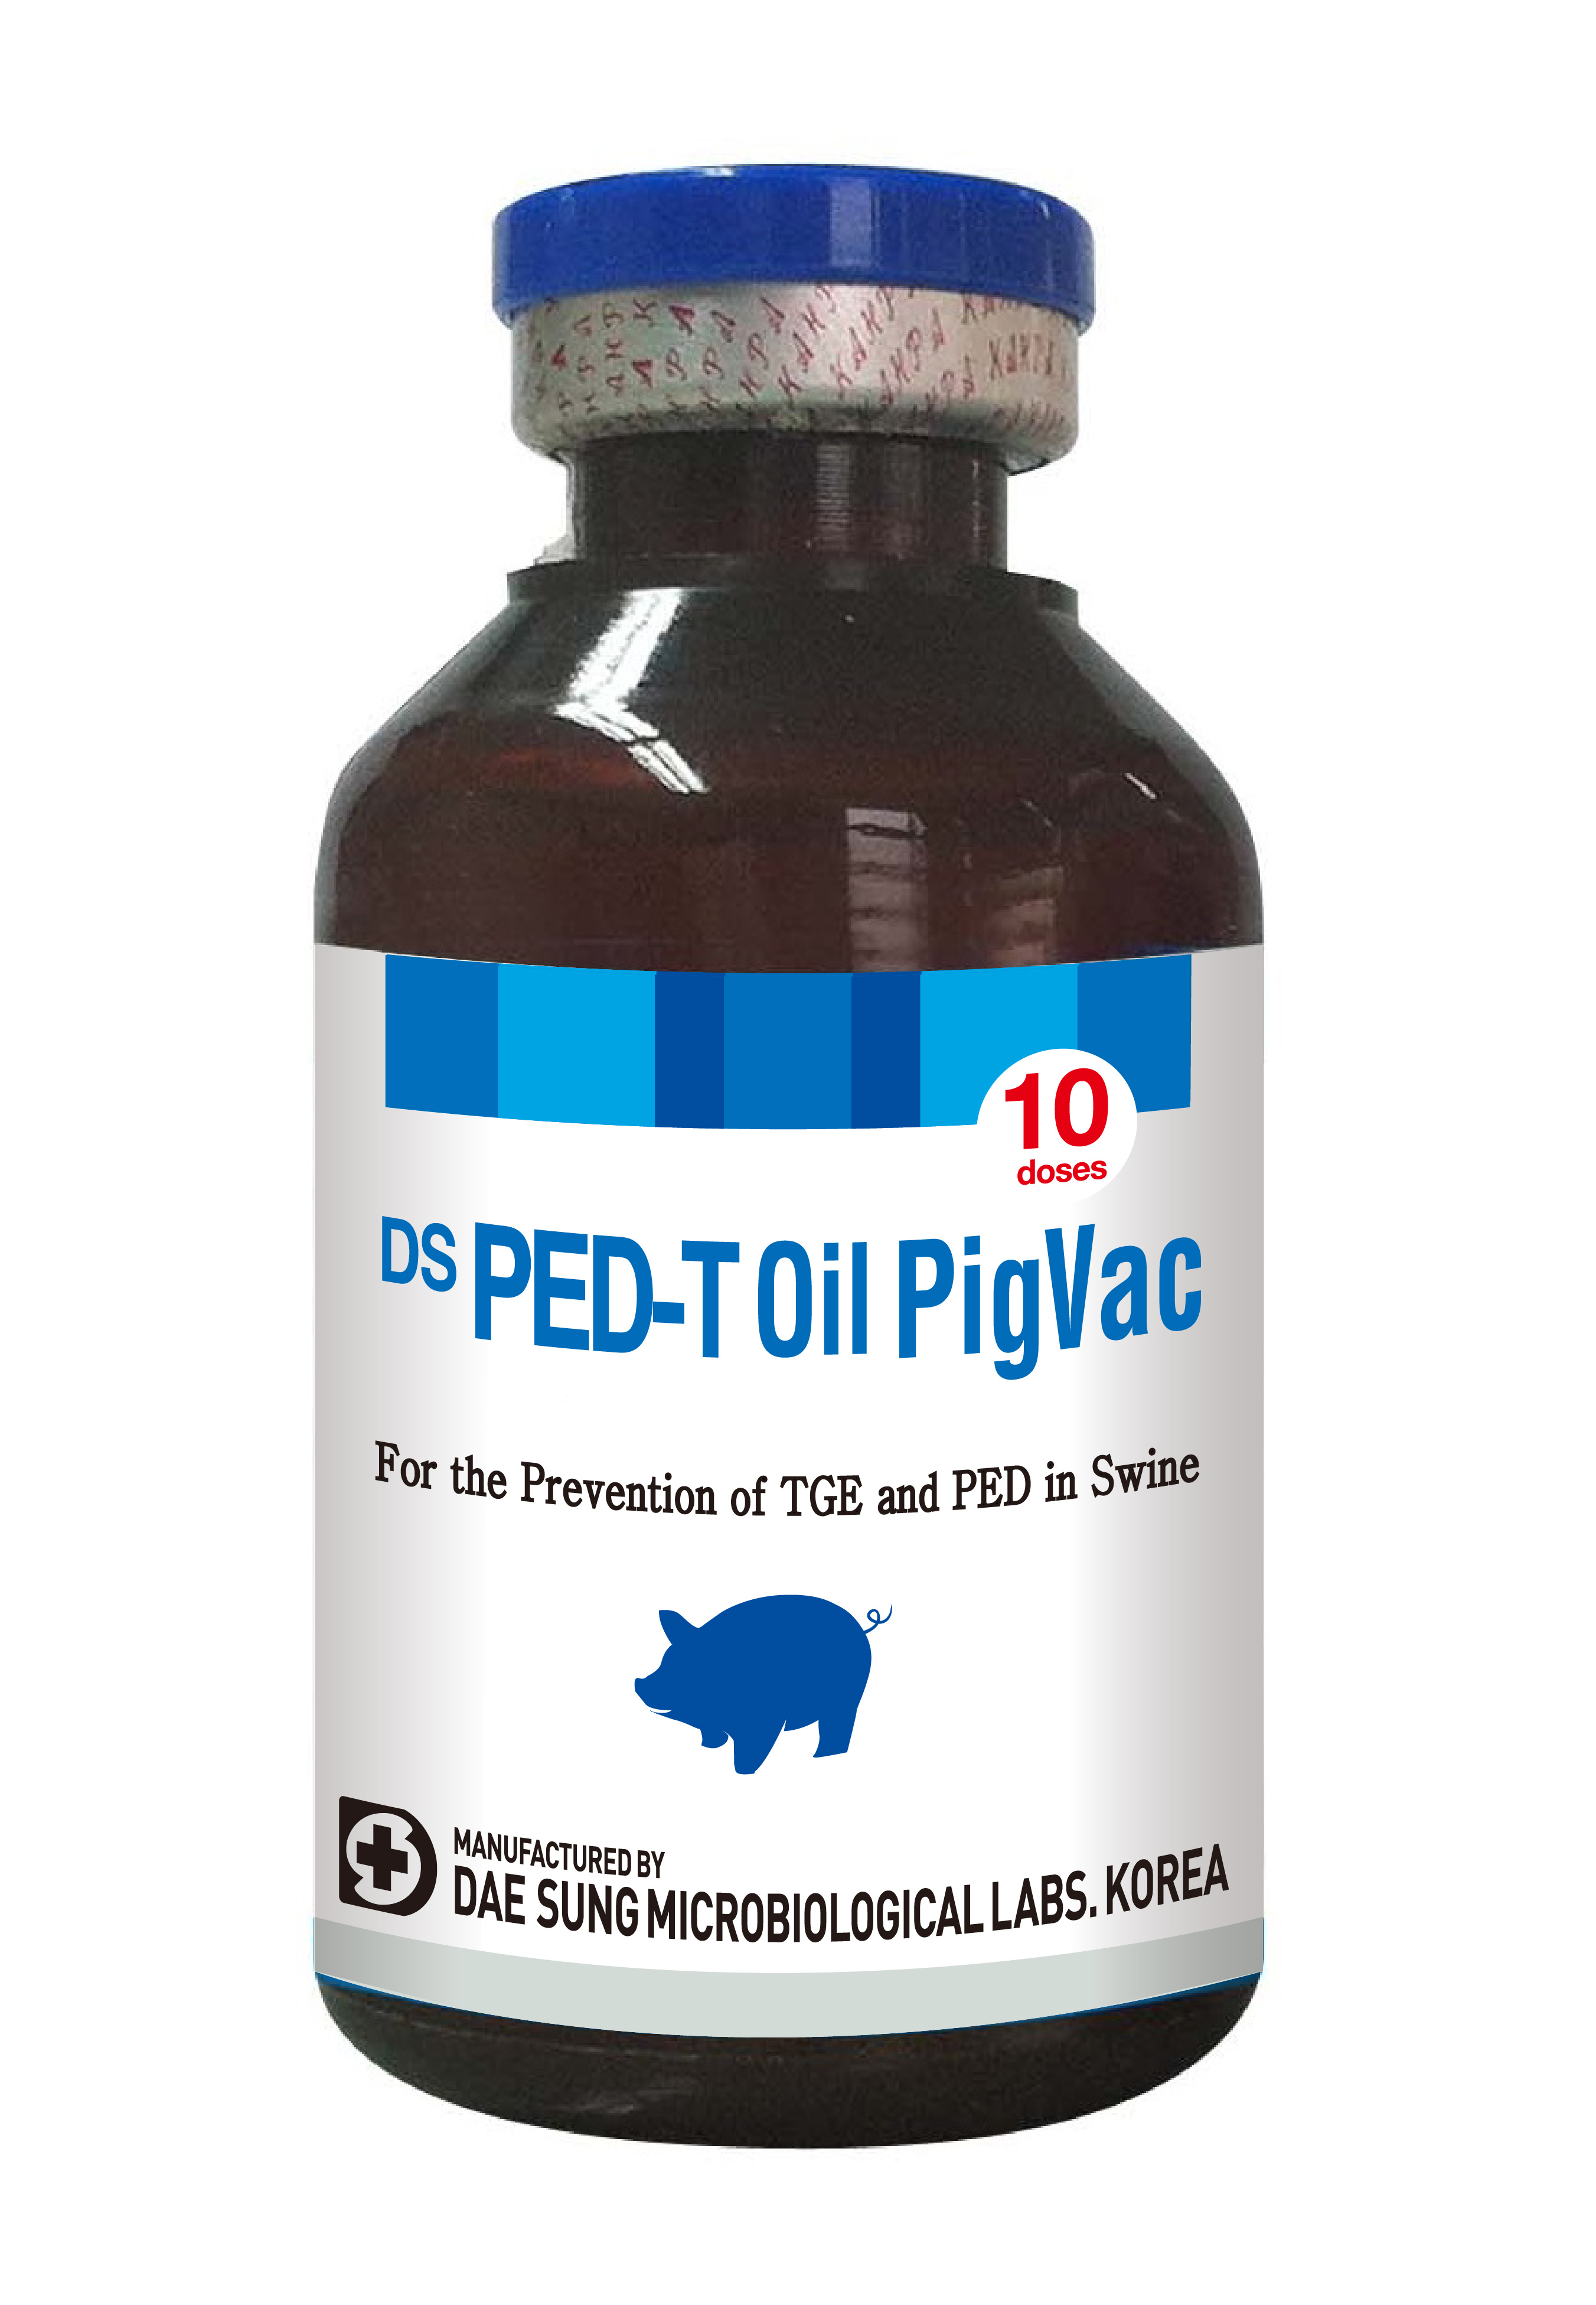 DS PED-T Oil PigVac.